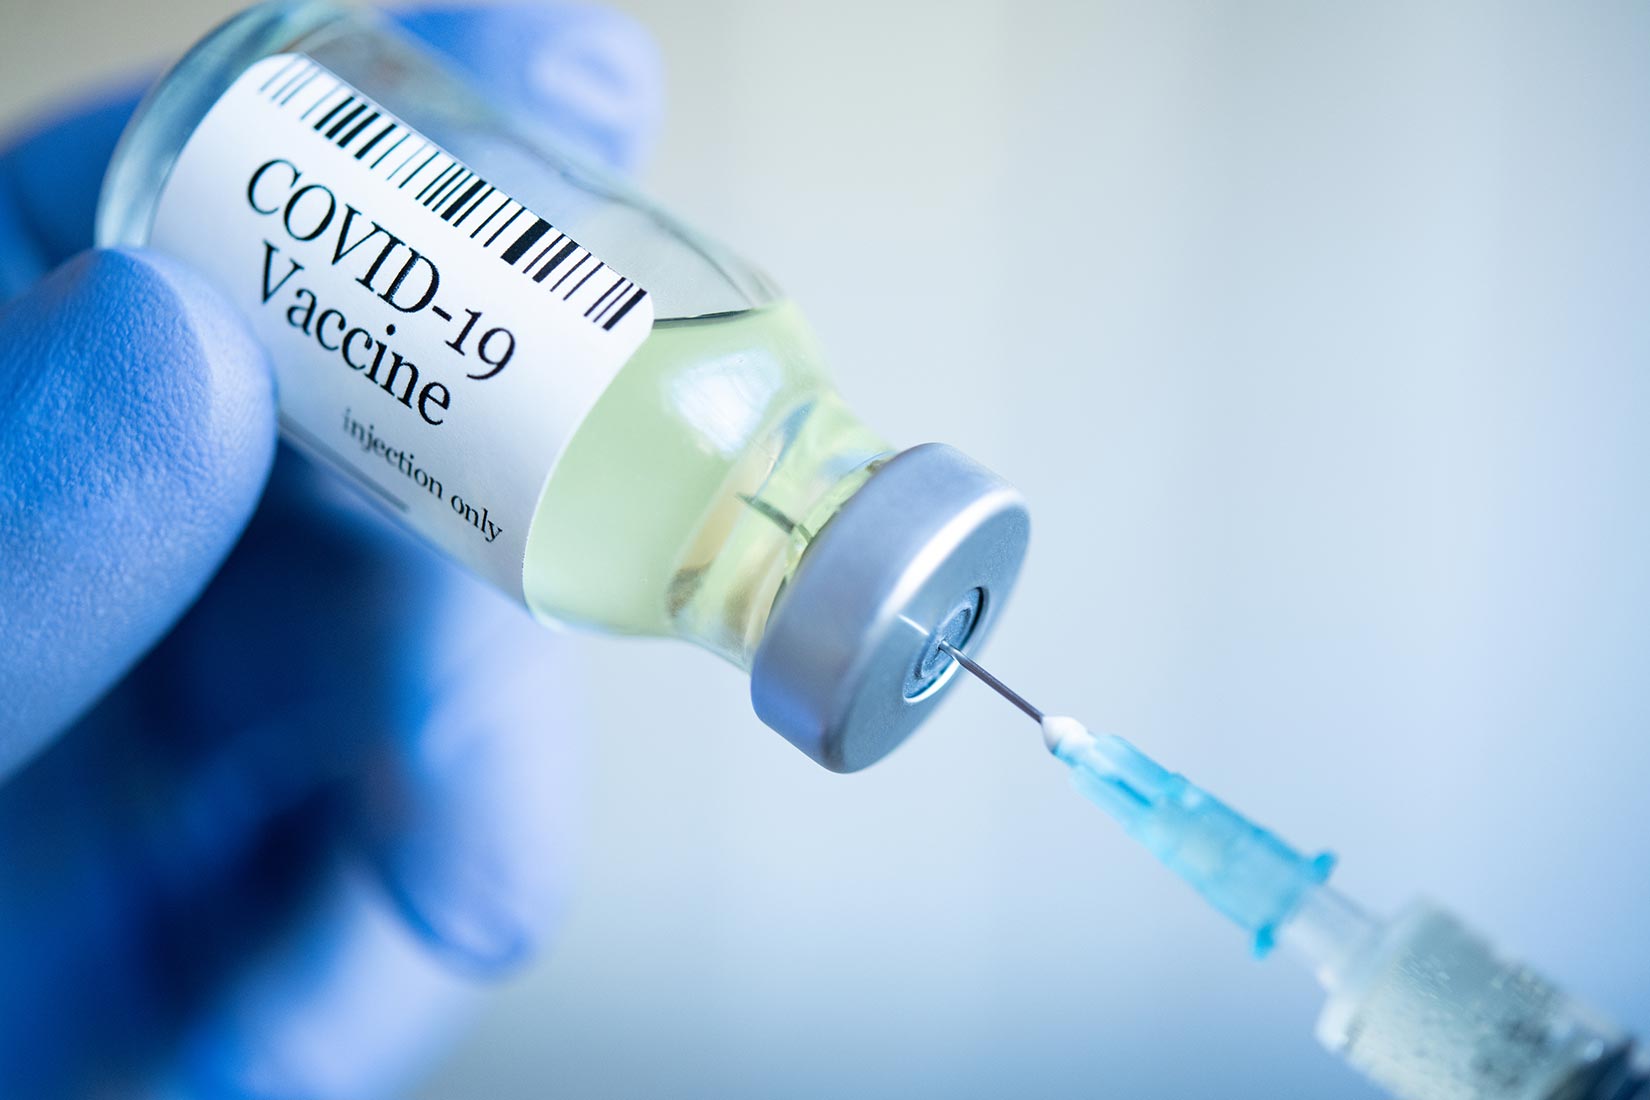 「ワクチン外交」で中国に反転攻勢を図るモディ政権